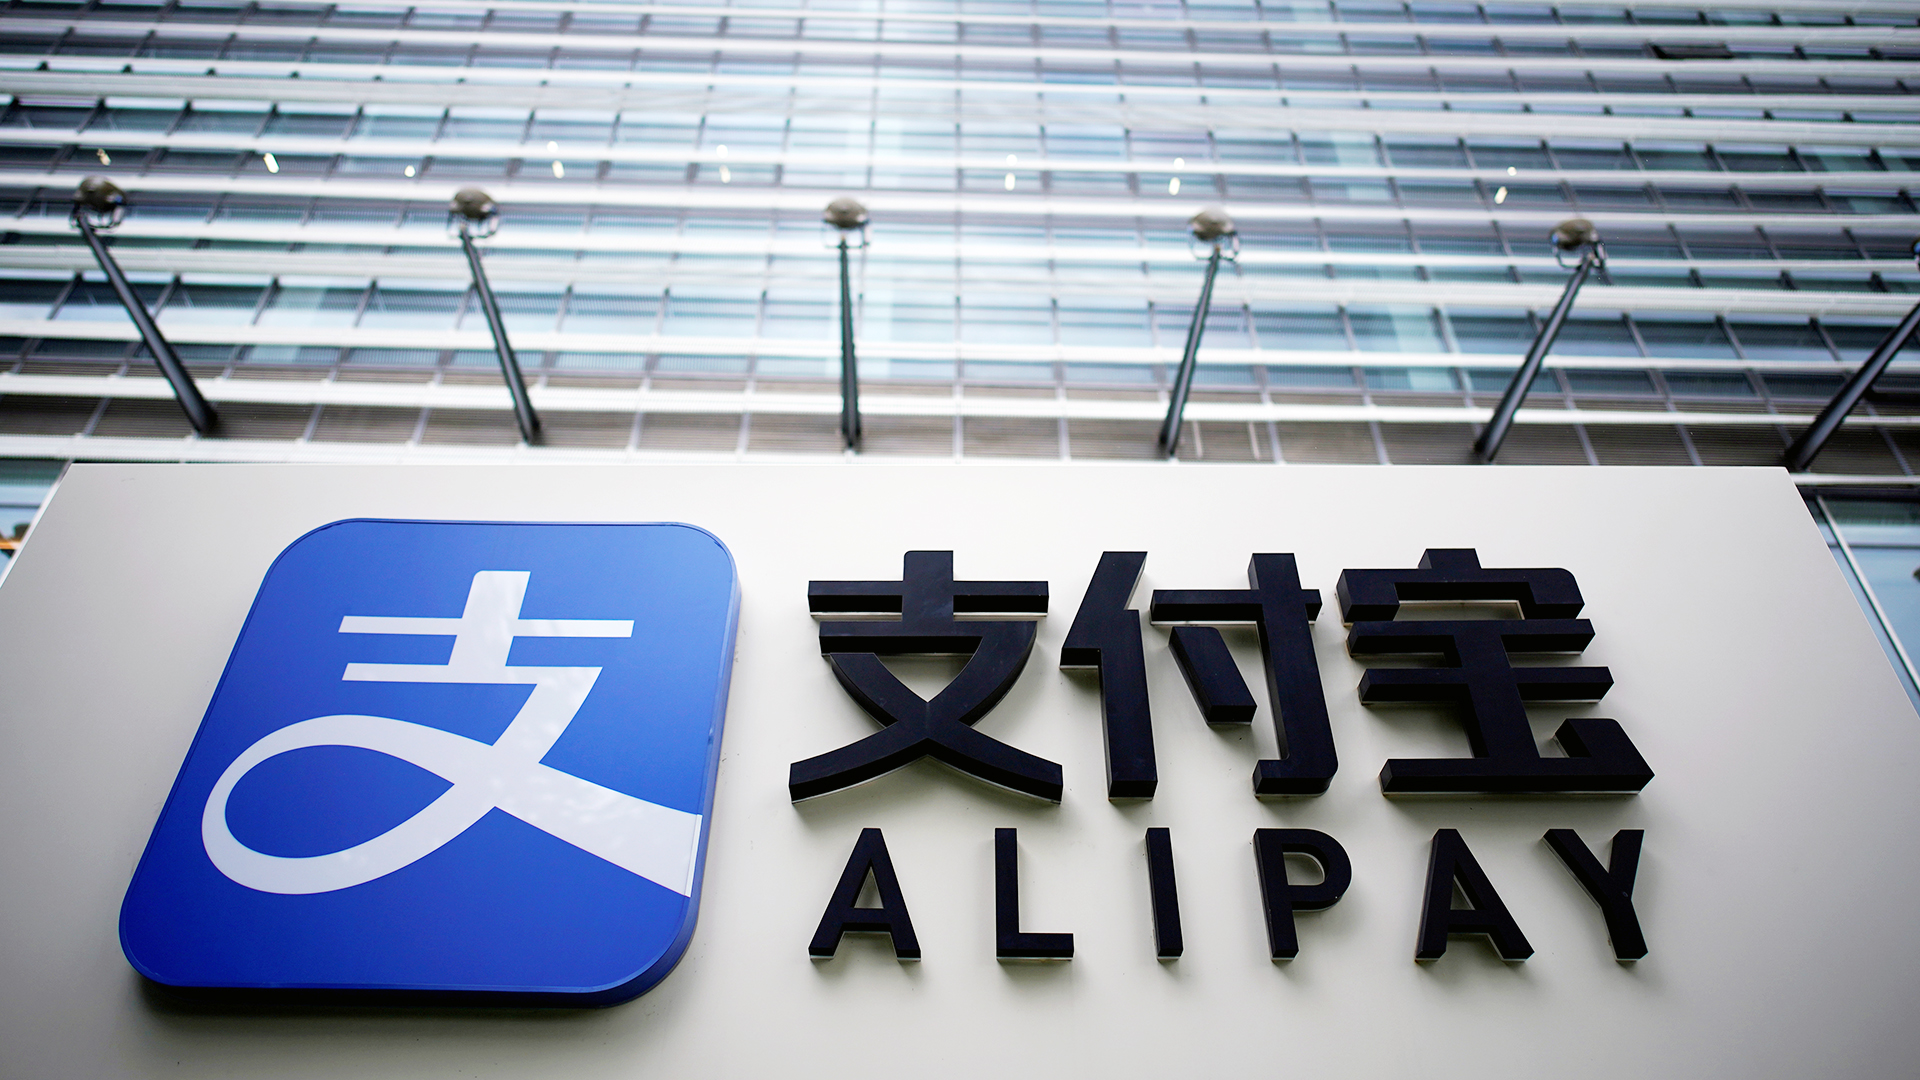 Alipay Schriftzug an einem Gebäude | REUTERS